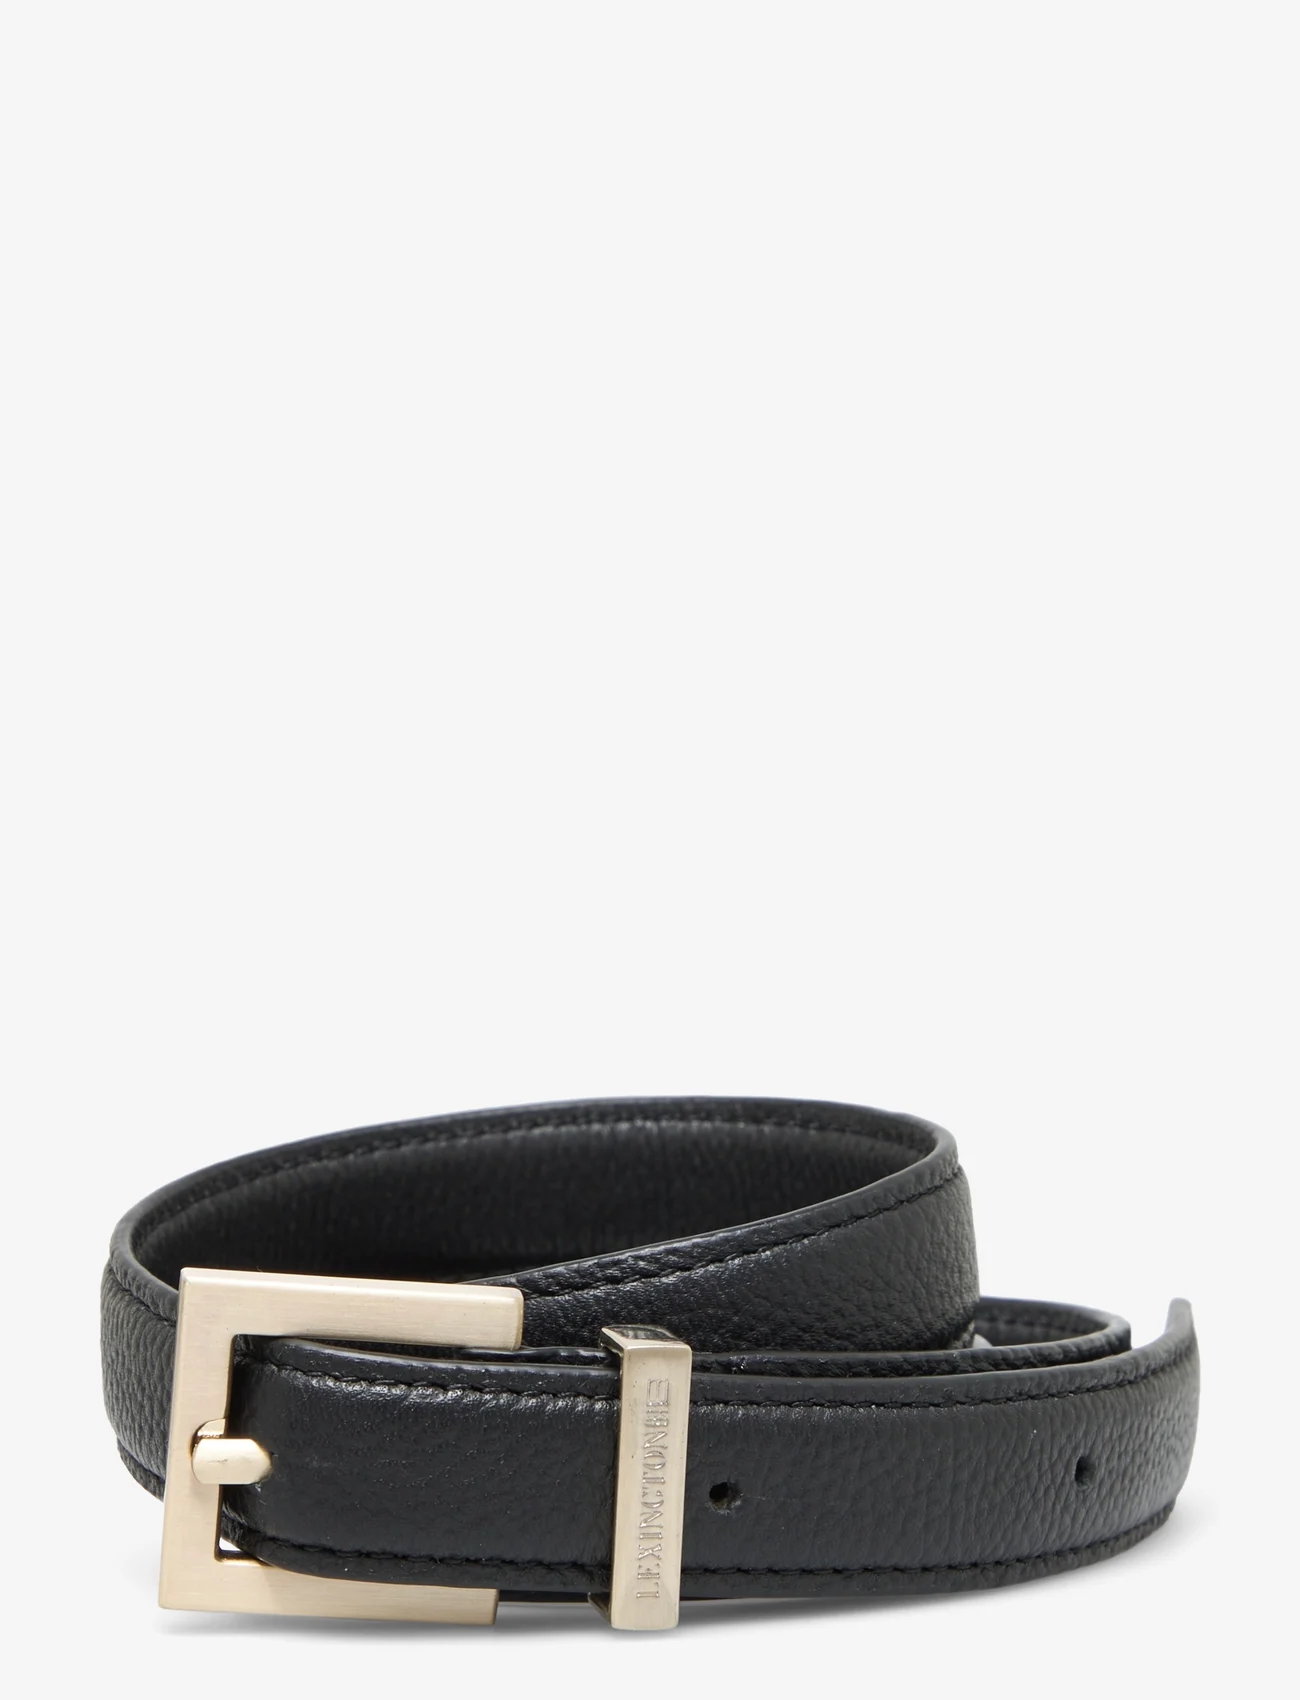 Lexington Clothing - Lexington Leather Belt - belter - black - 0